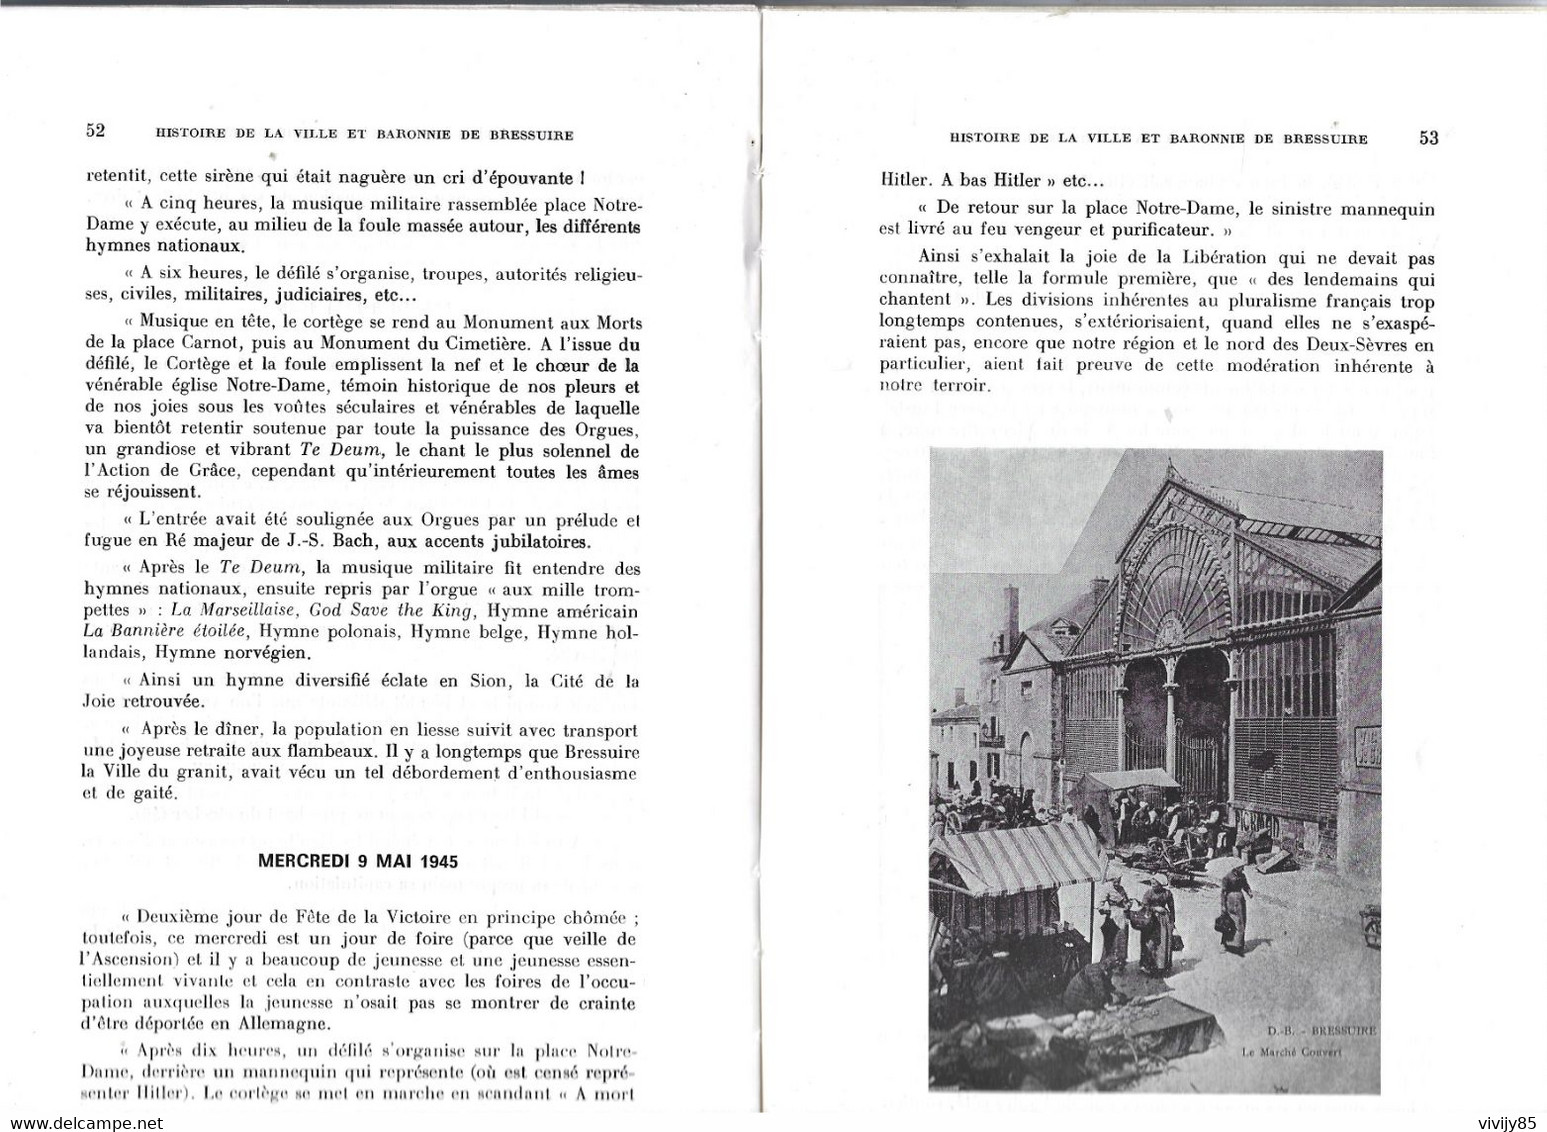 79 - BRESSUIRE - Livre De 55 Pages " Histoire Abrégée De La Ville Et Baronnie " Par Raymond Garand - 1973 - Poitou-Charentes